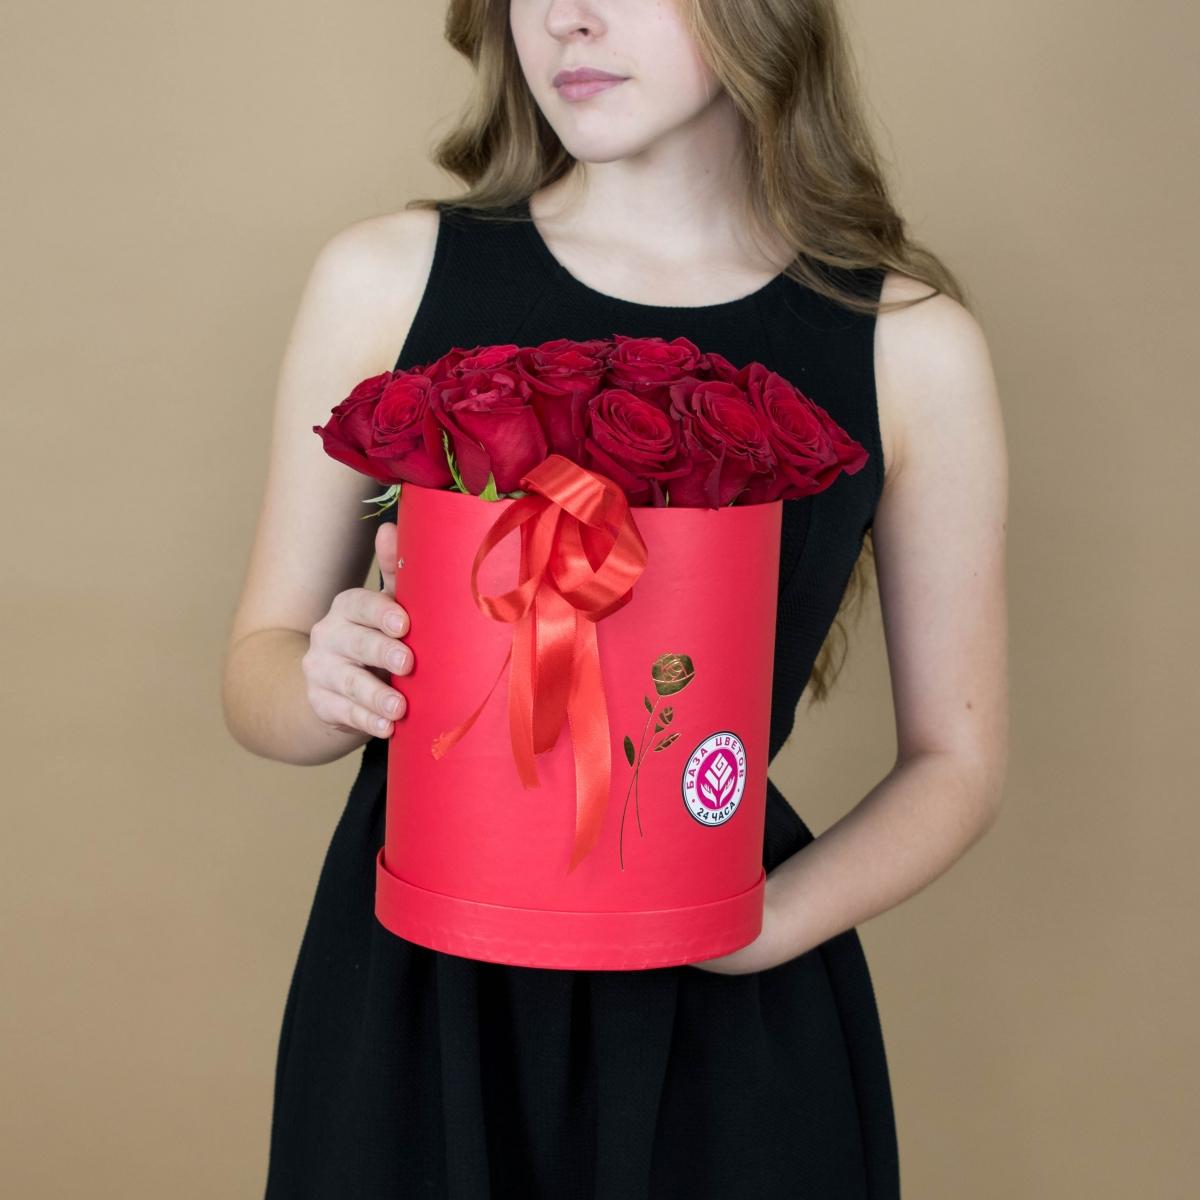 Розы красные в шляпной коробке артикул букета  2314